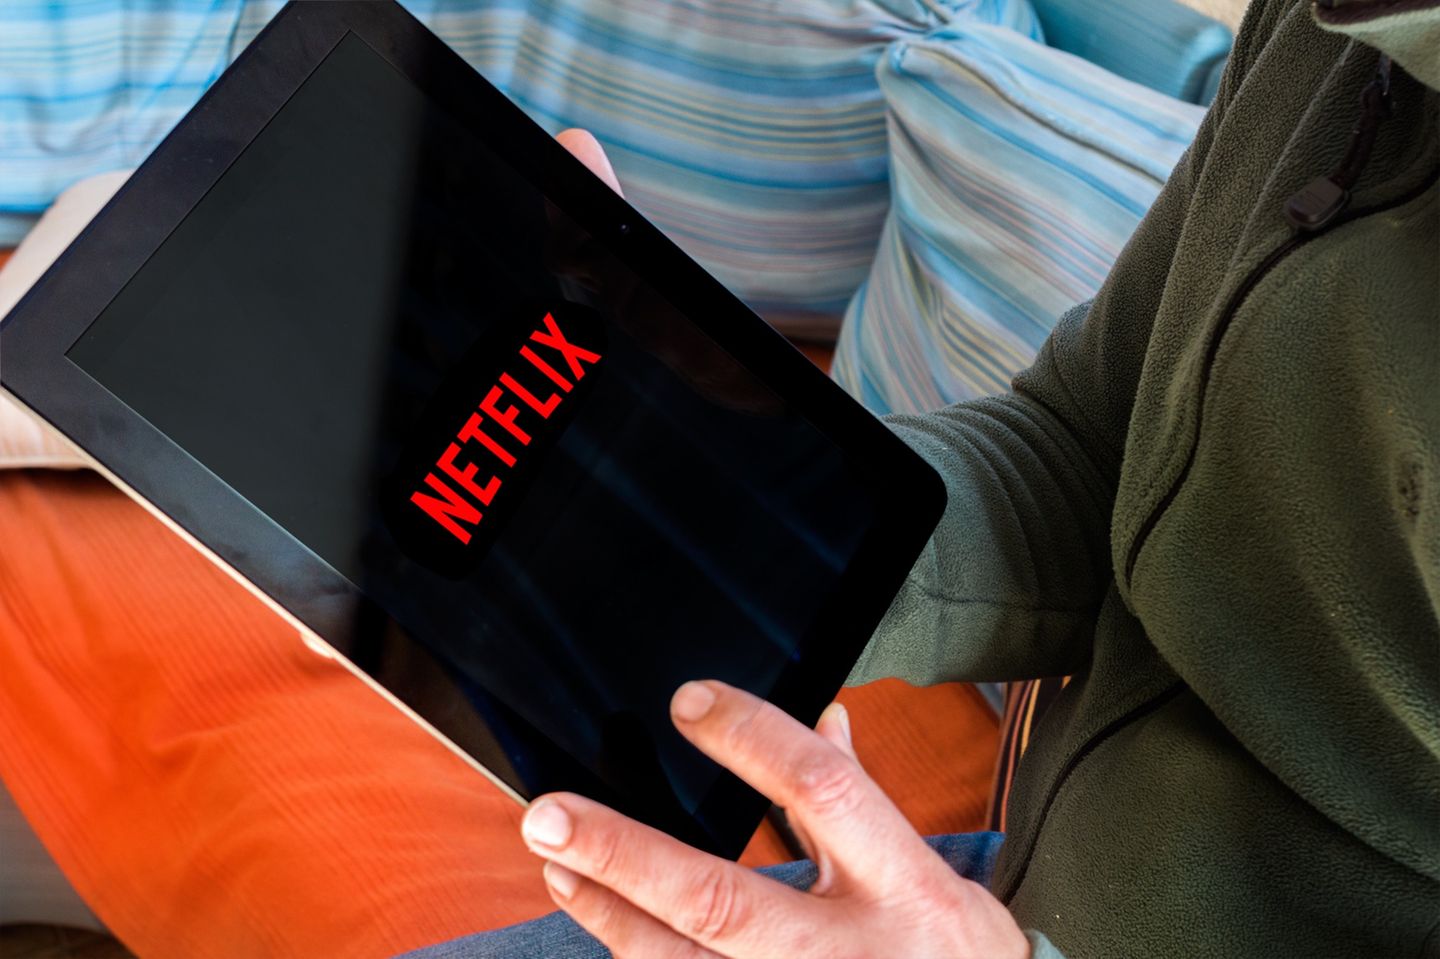 Tod nach Netflix-Serie - dieser Fall schockt gerade die Welt